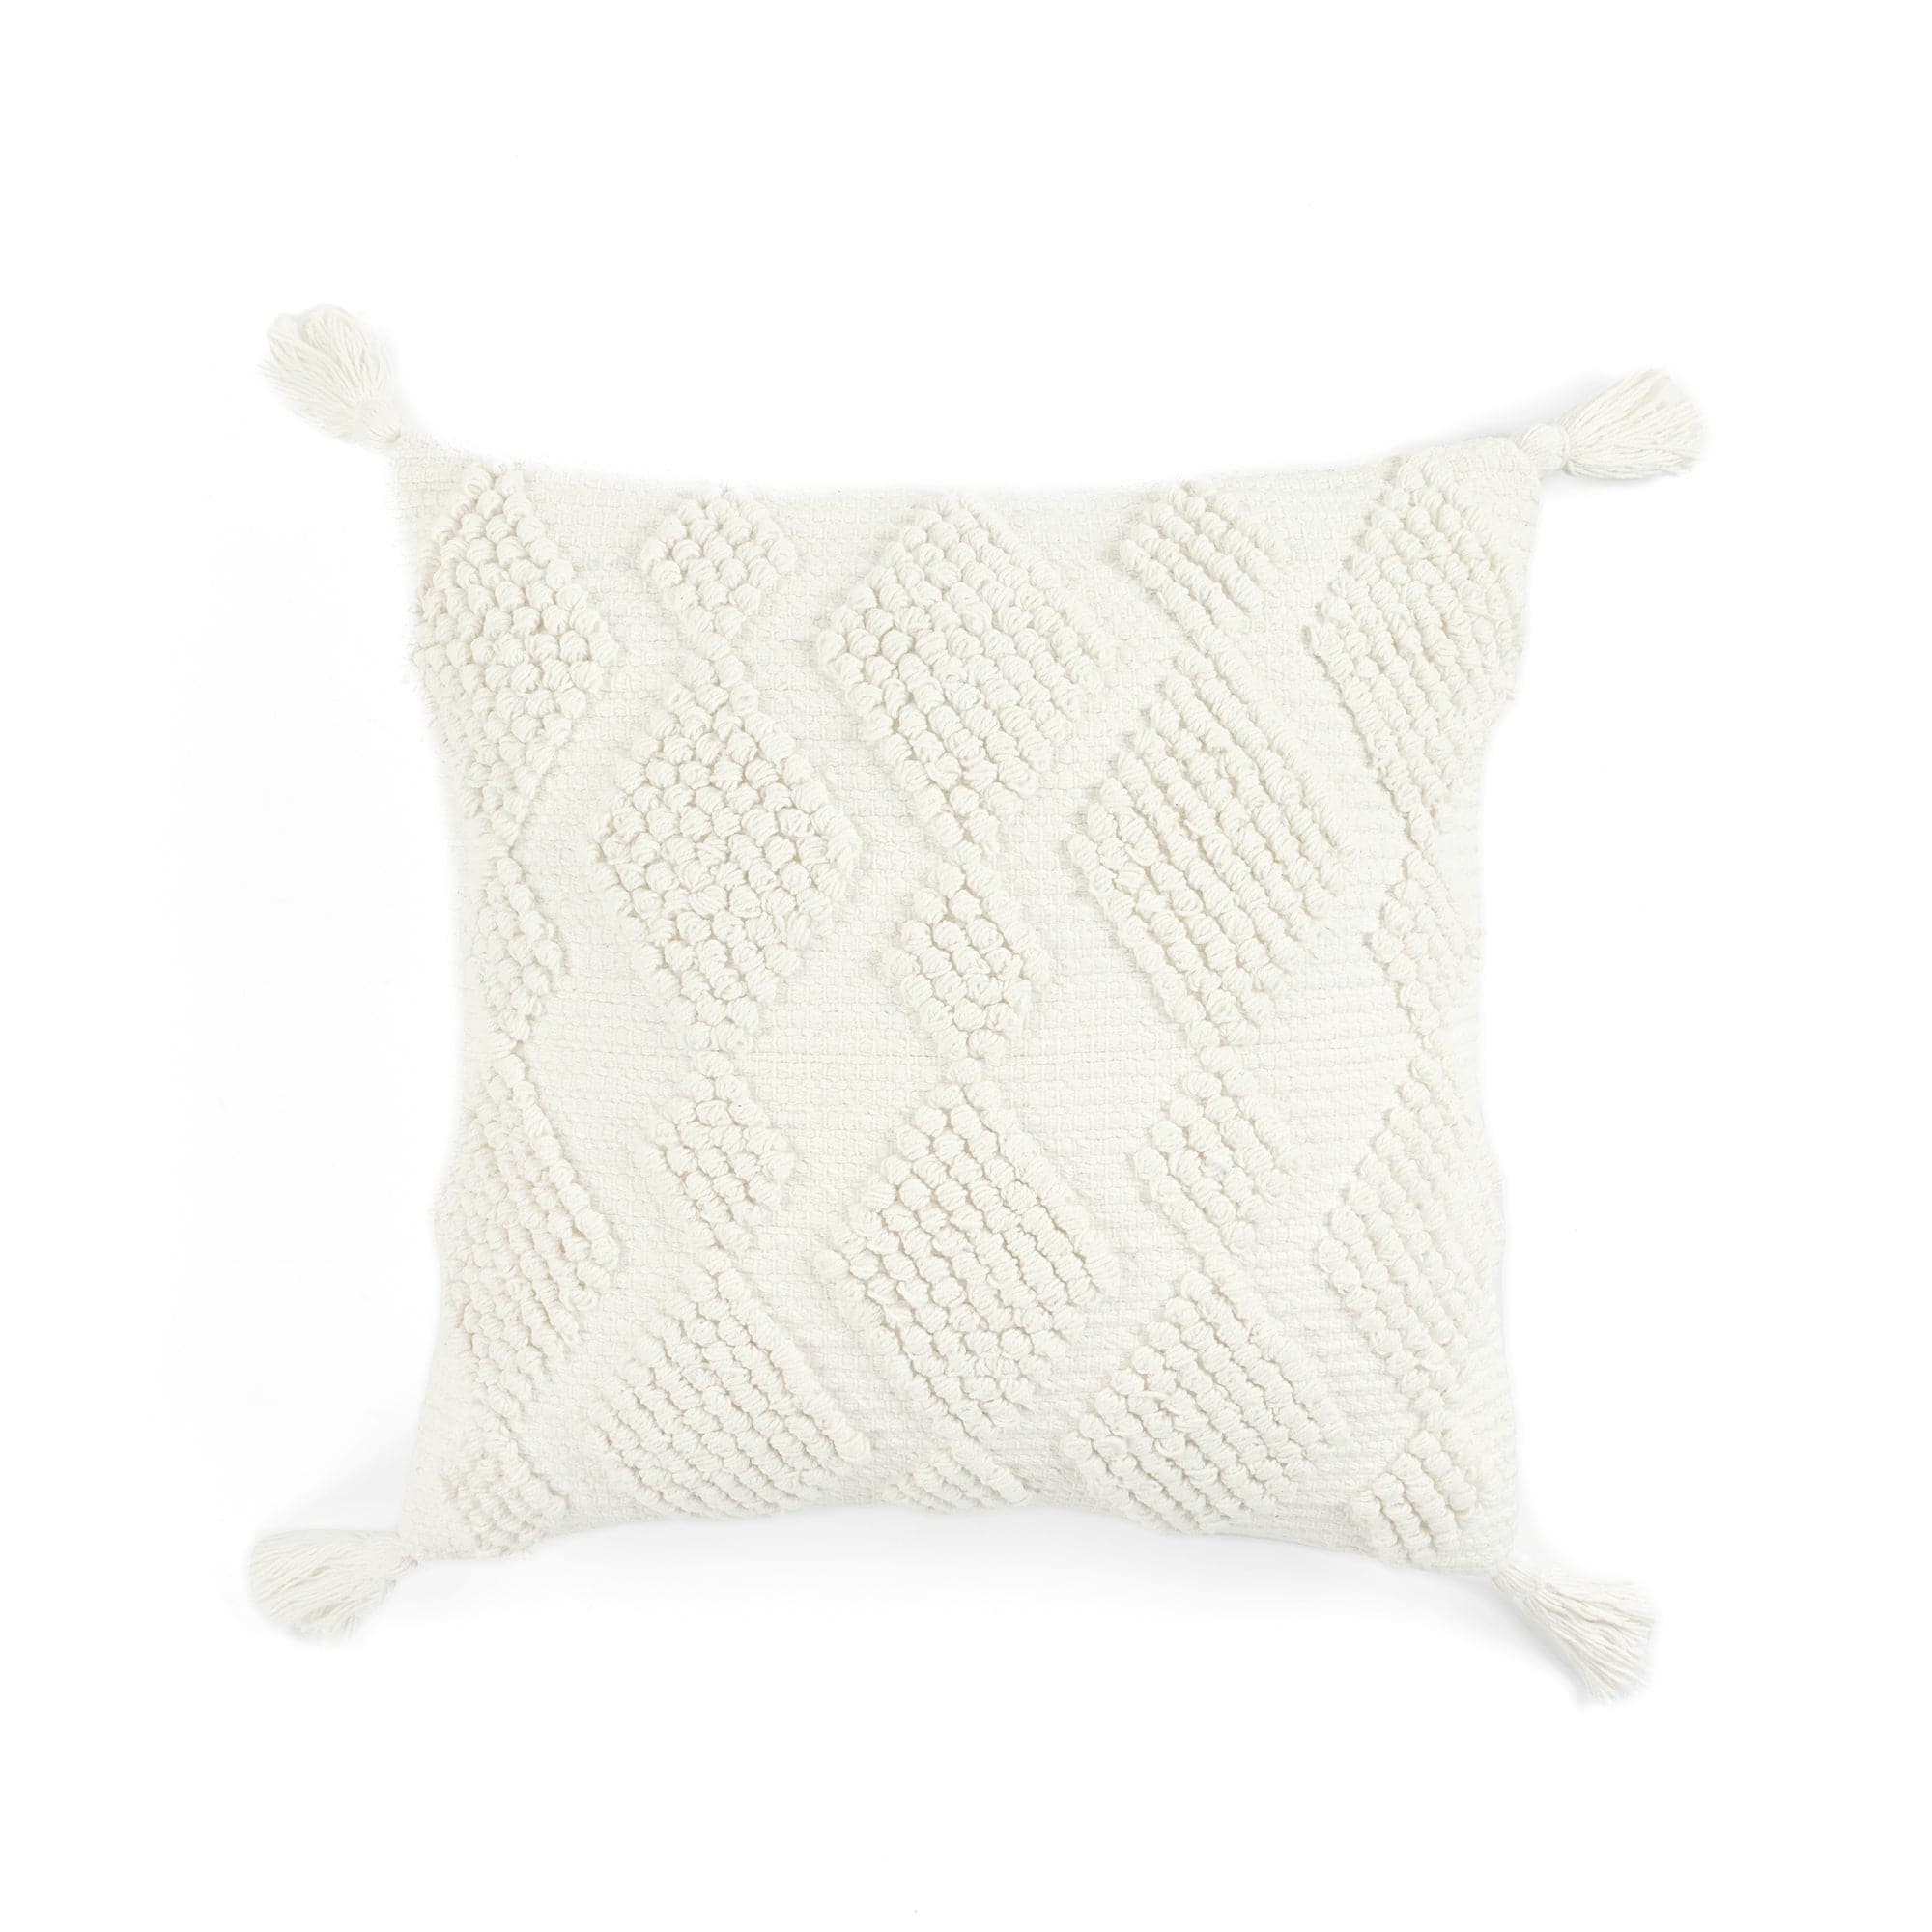 18X18 White Sherpa Throw Pillow